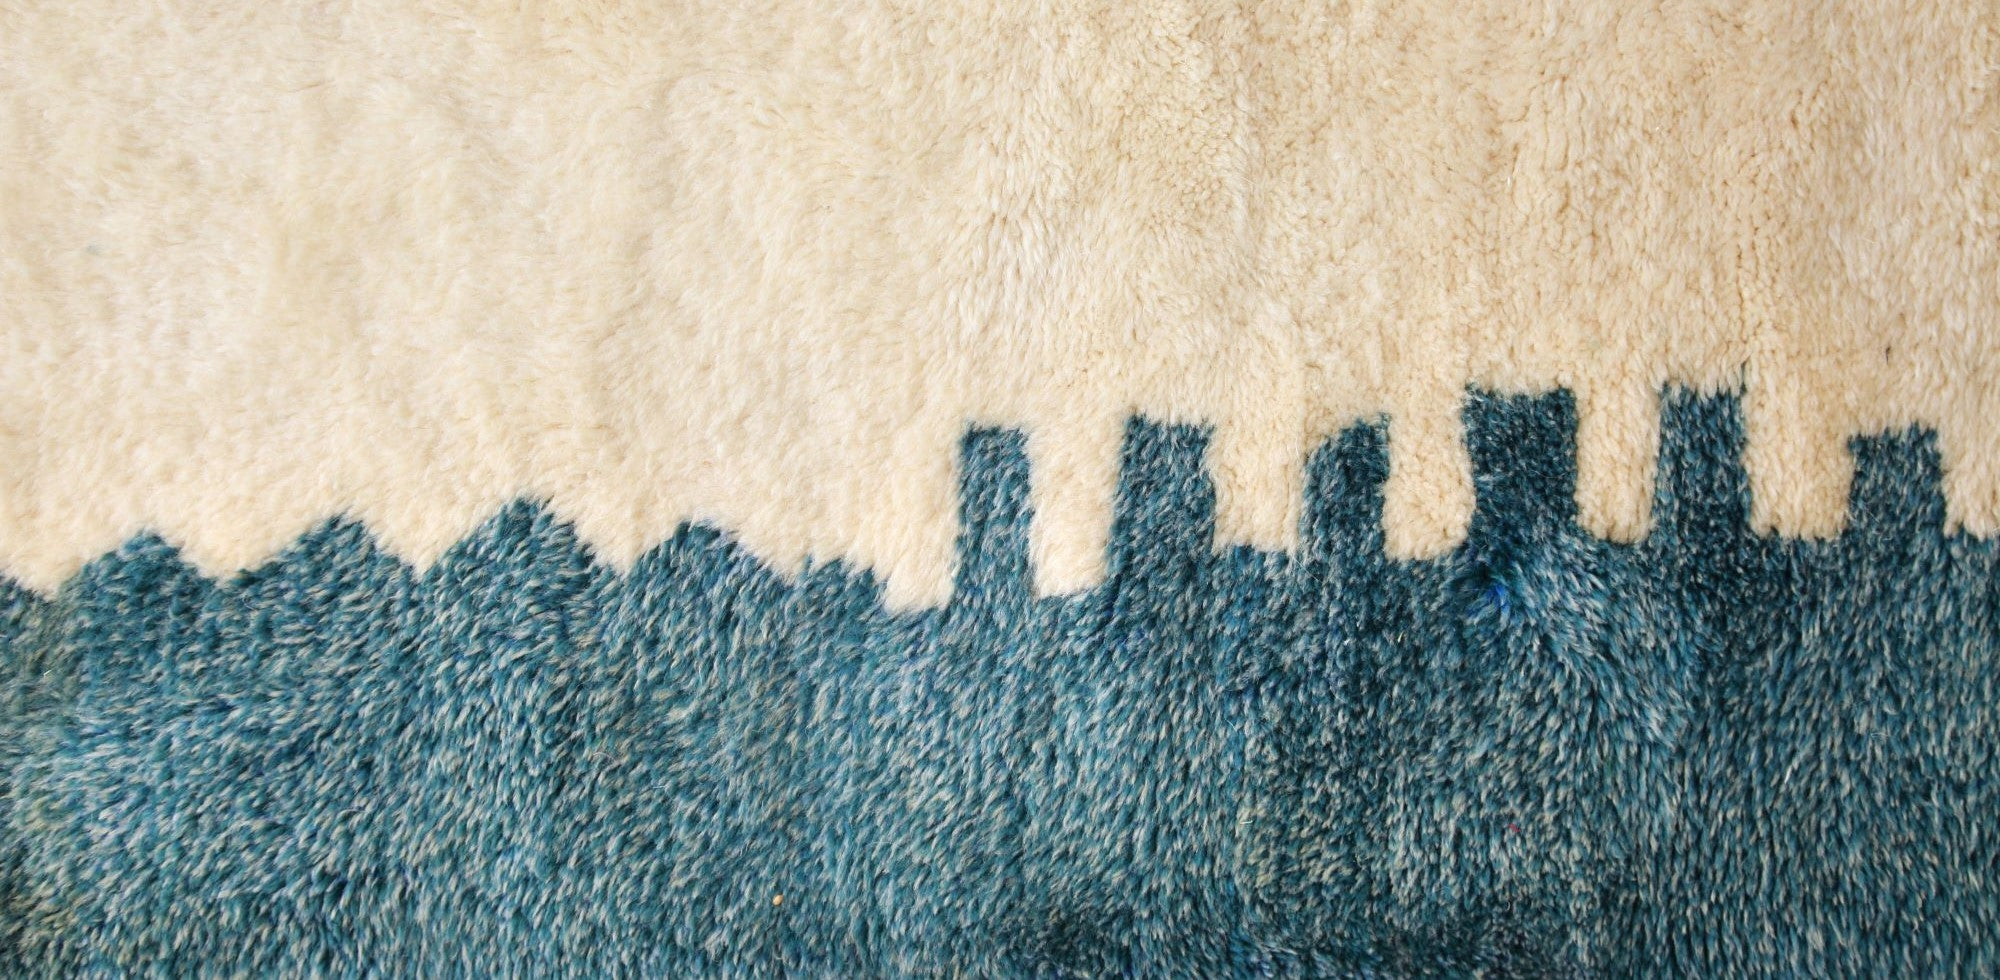 dettaglio di un tappeto beni mrirt che ricorda lo skyline di una città